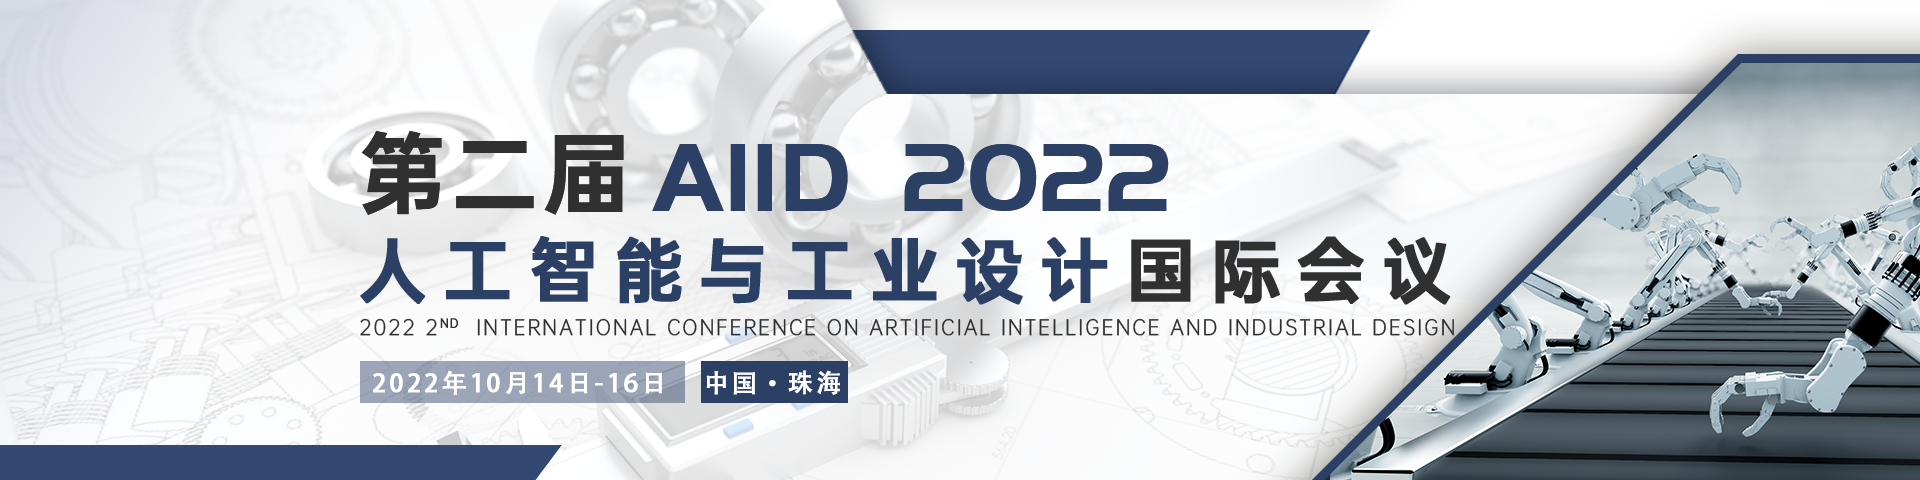 10月珠海AIID 2022会议官网中文banner-何雪仪-20211227.png